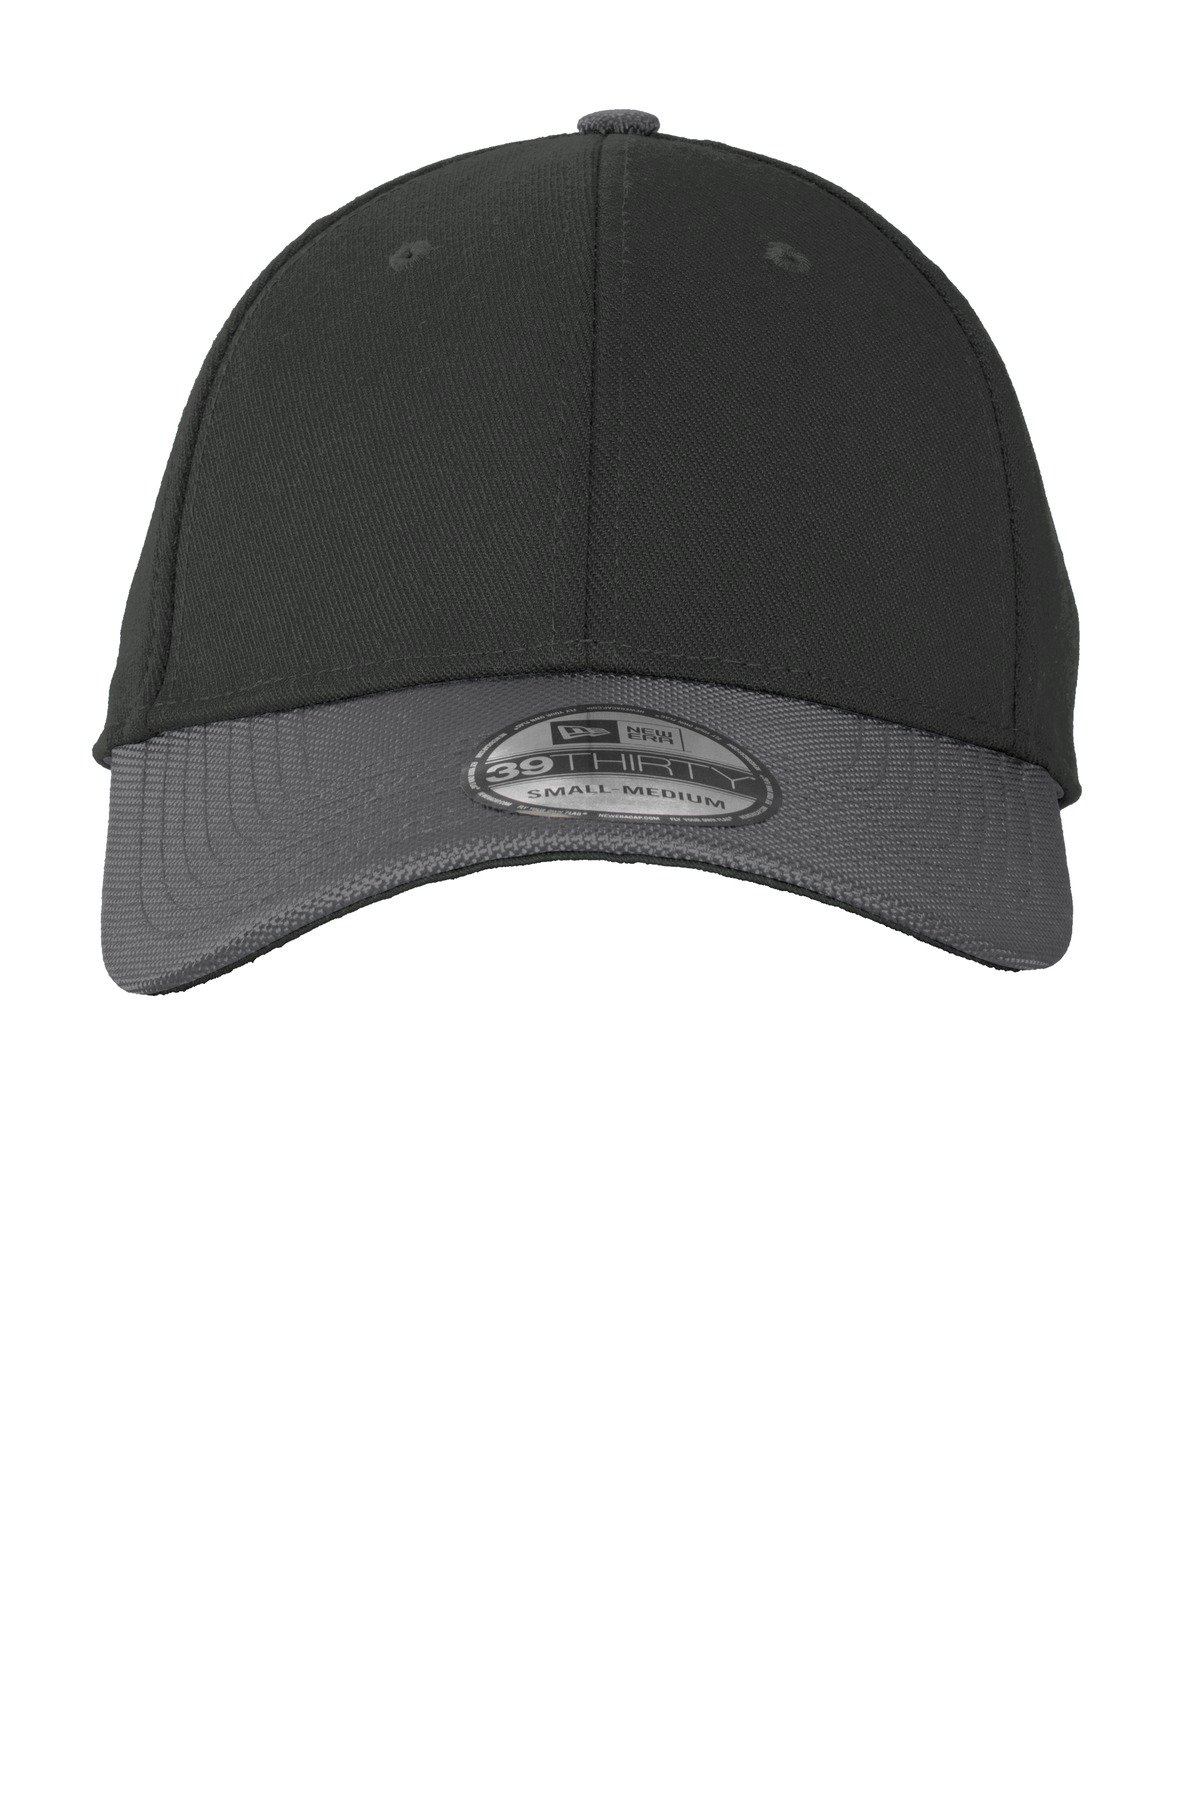 New Era ® Ballistic Cap. NE701 - Custom Shirt Shop